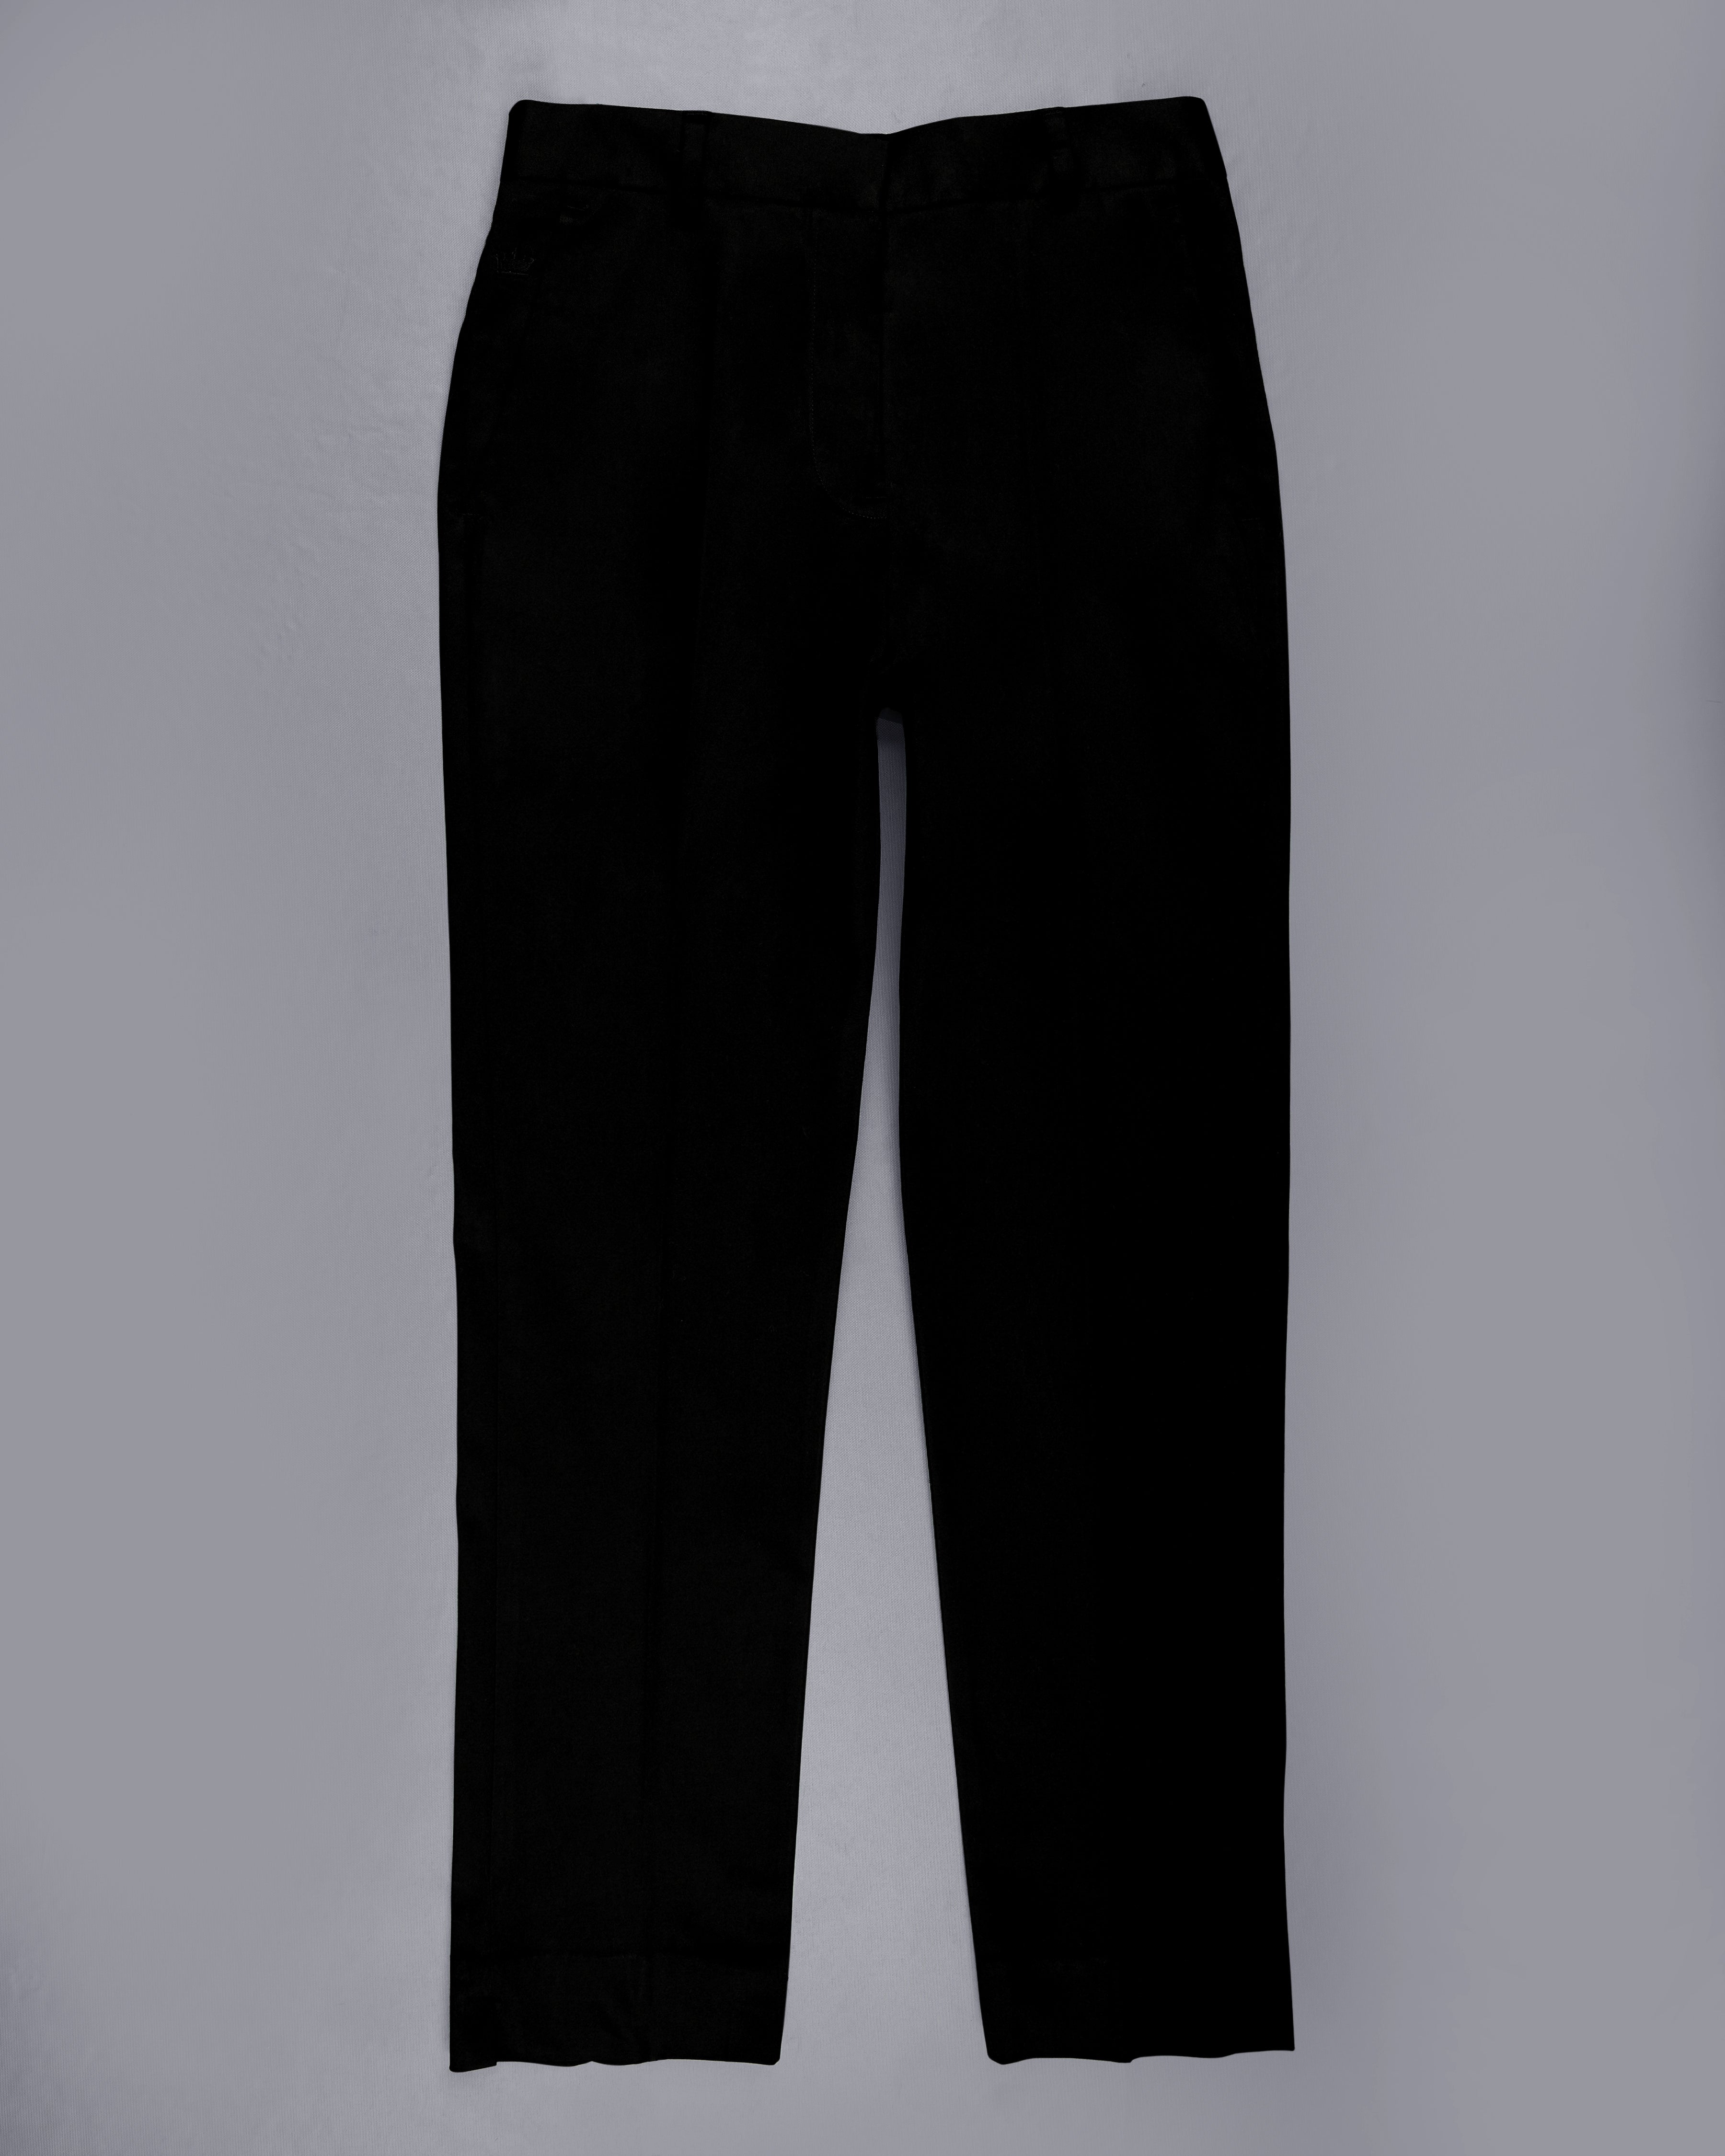 Jade Black Premium Cotton Women's Pant WOT001-24, WOT001-26, WOT001-28, WOT001-30, WOT001-32, WOT001-34